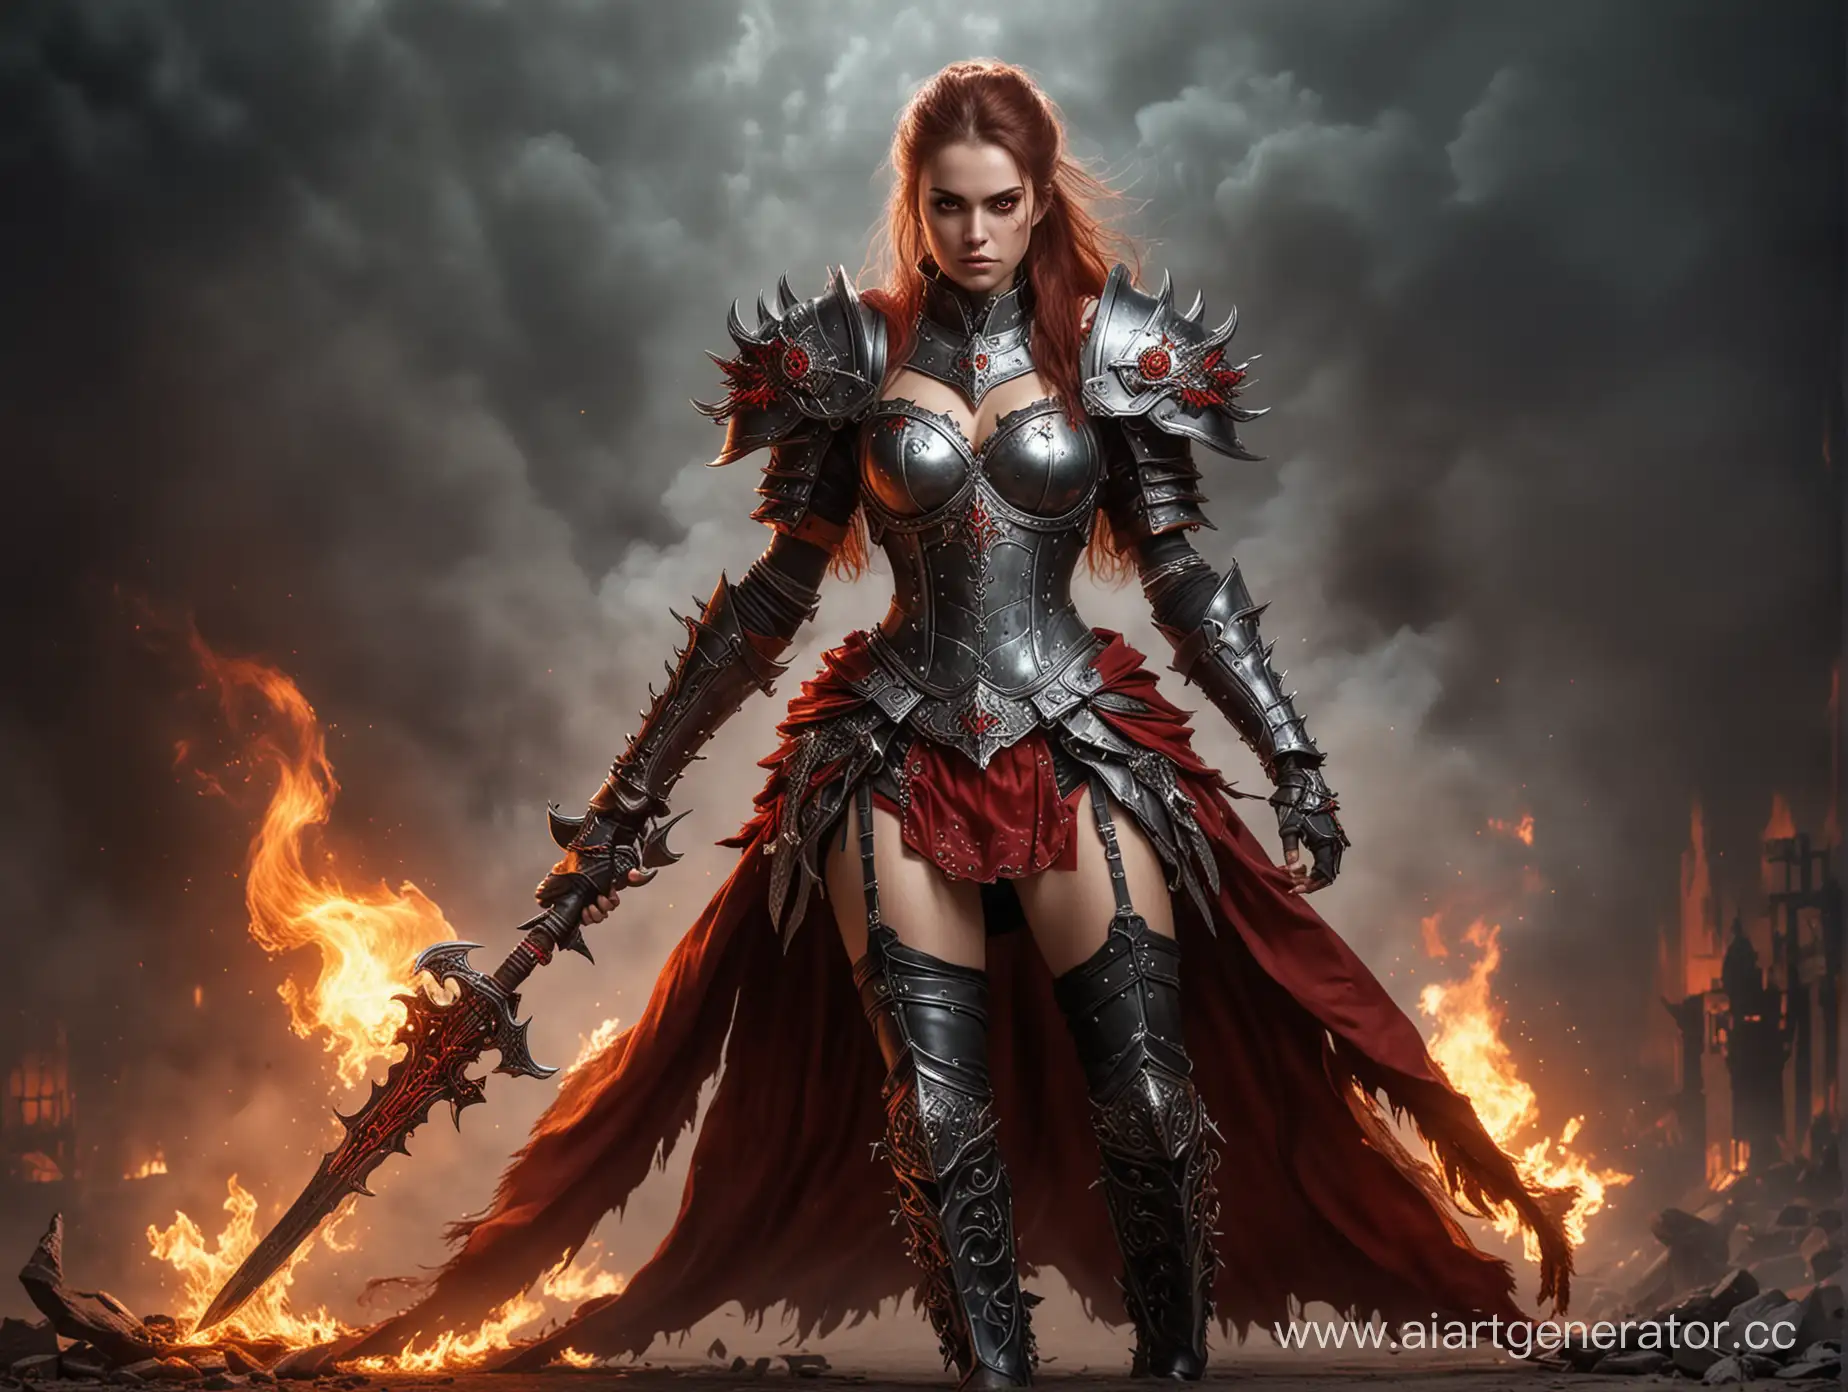 Женщина Archaon  25 лет. Warhammer Fantasy Battle. Одета в стальные доспехи и пышную юбку по колено. Туфли на шпильке и колготки. Глаза пылают красным пламенем.